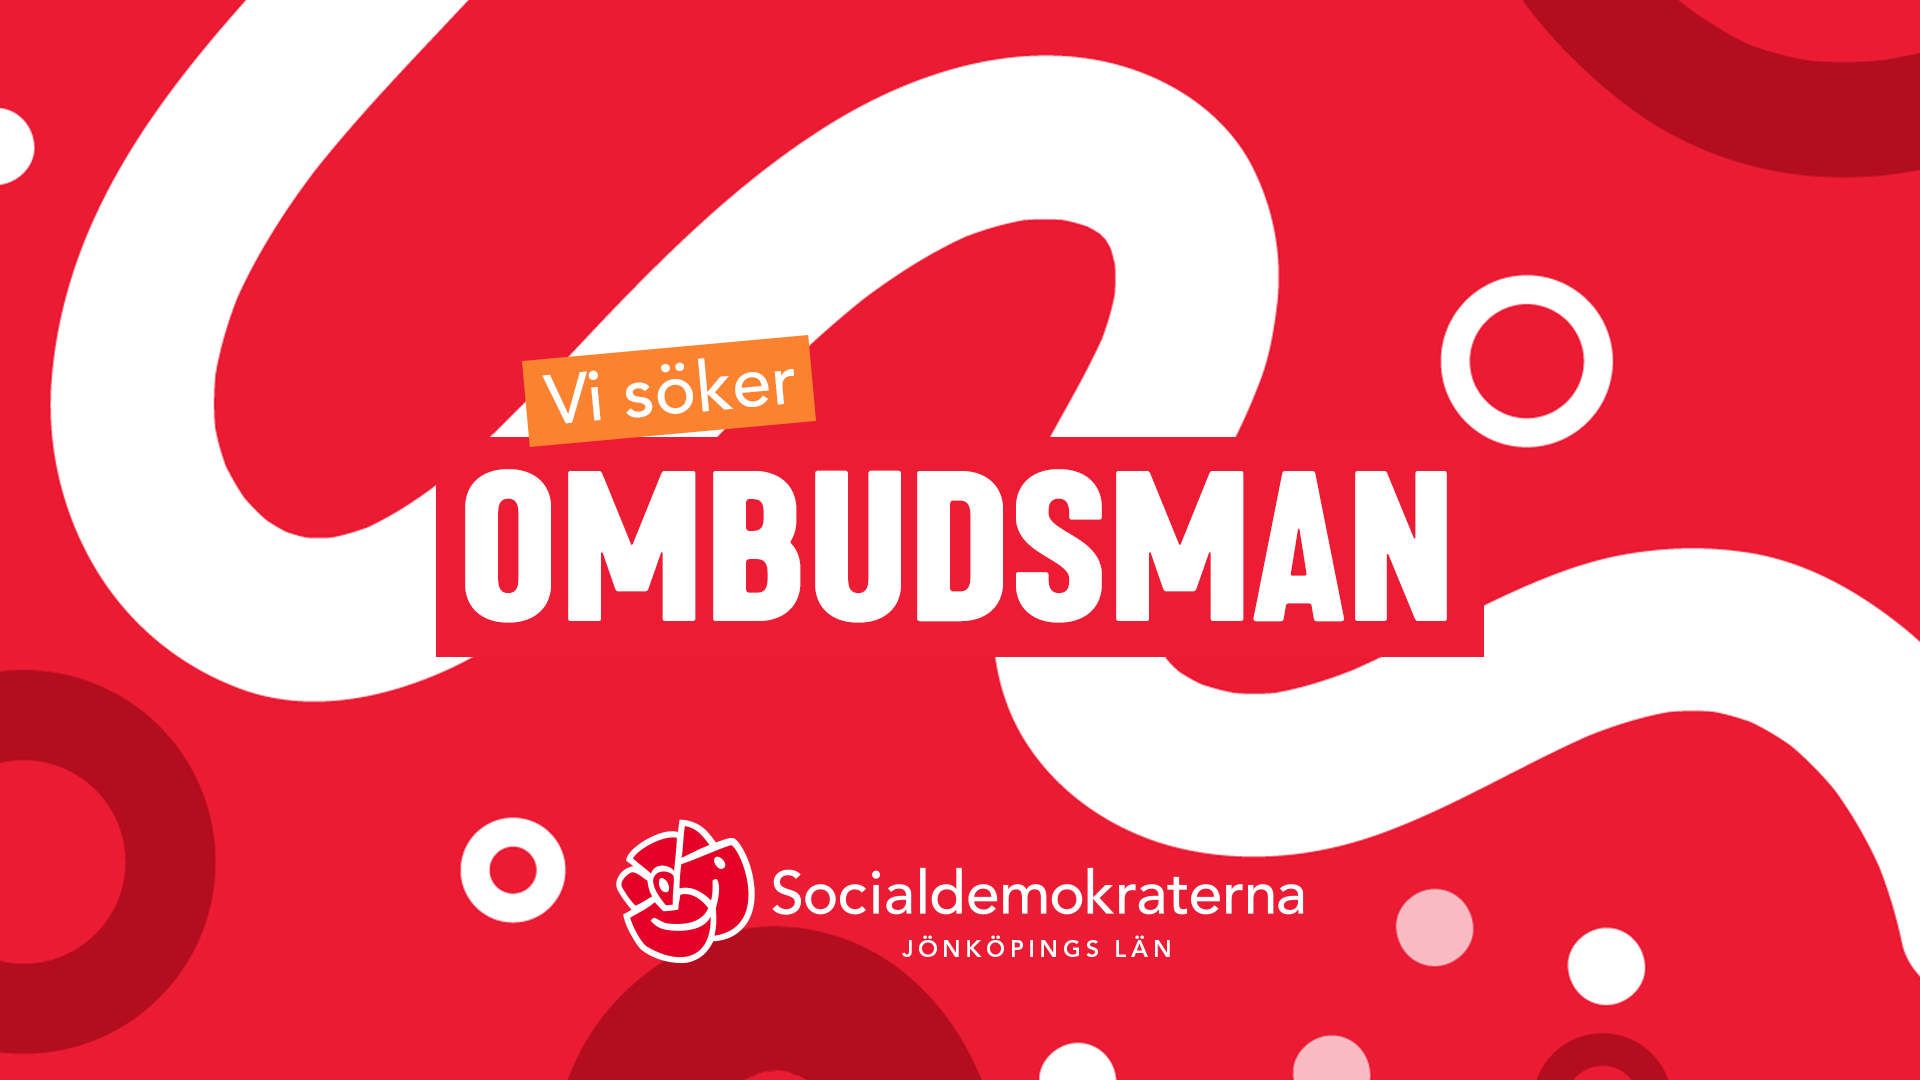 Socialdemokraterna i Jönköpings län söker ombudsman